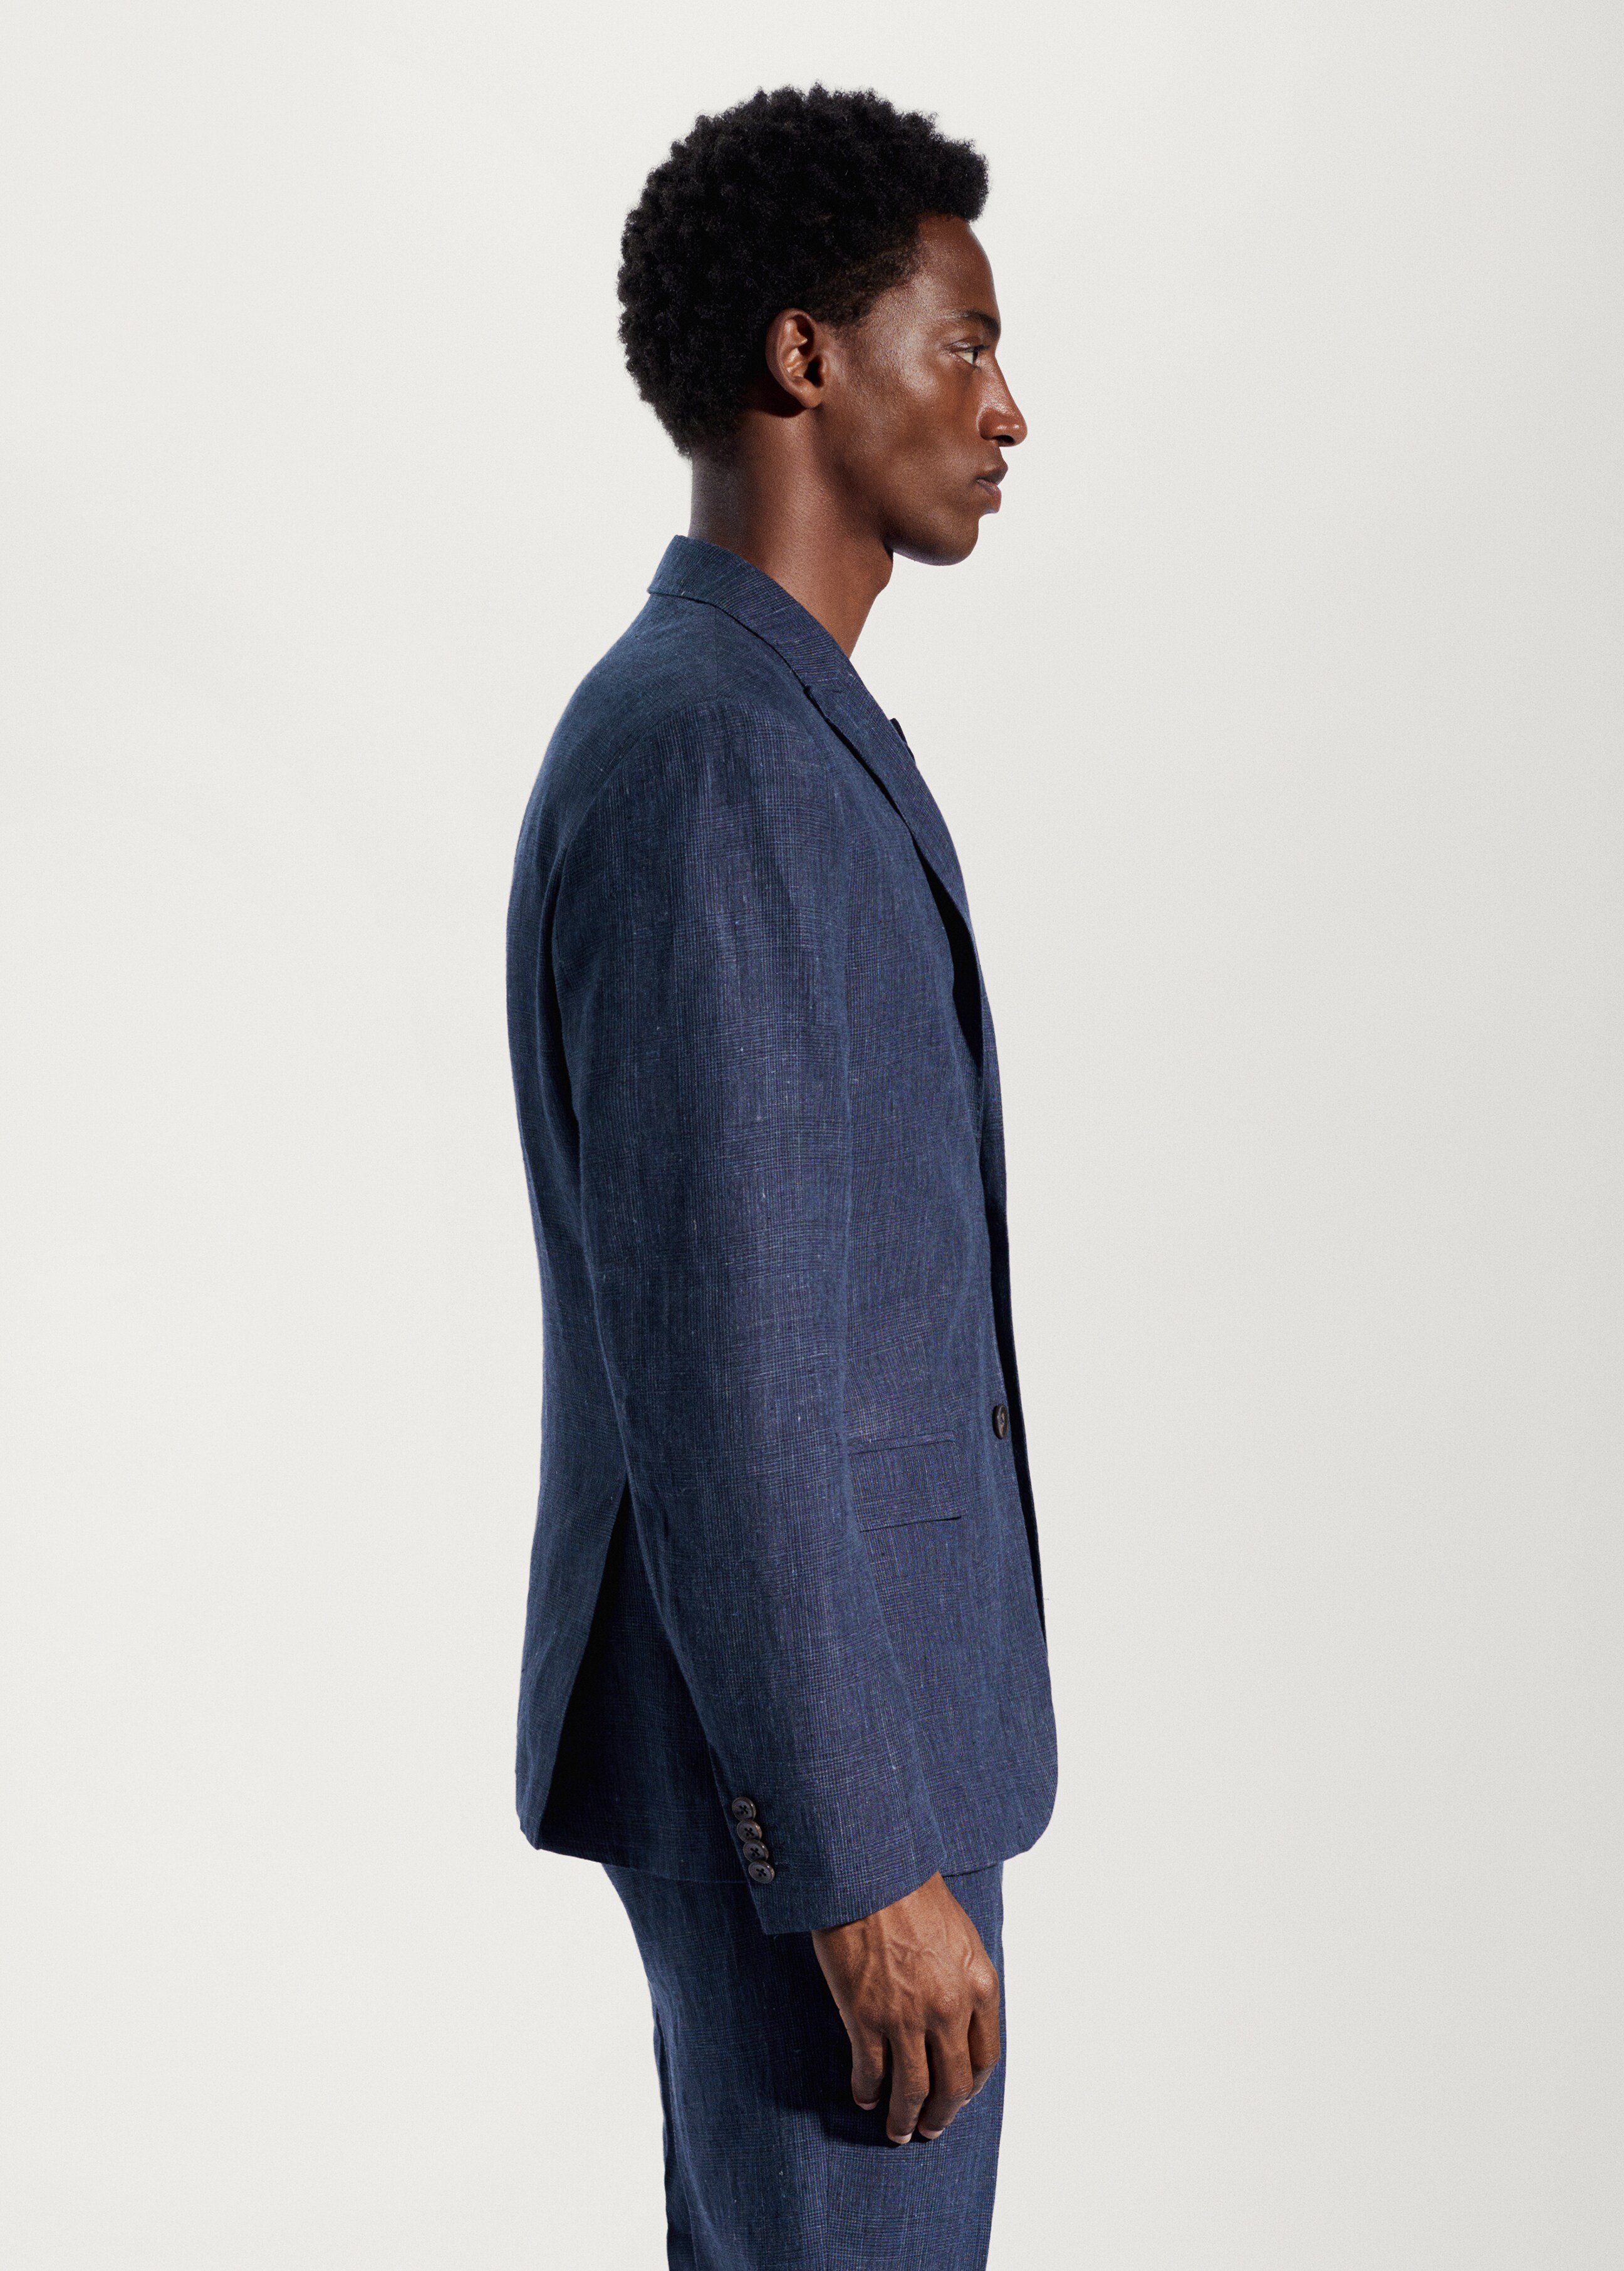 100% linen suit blazer - Details of the article 4